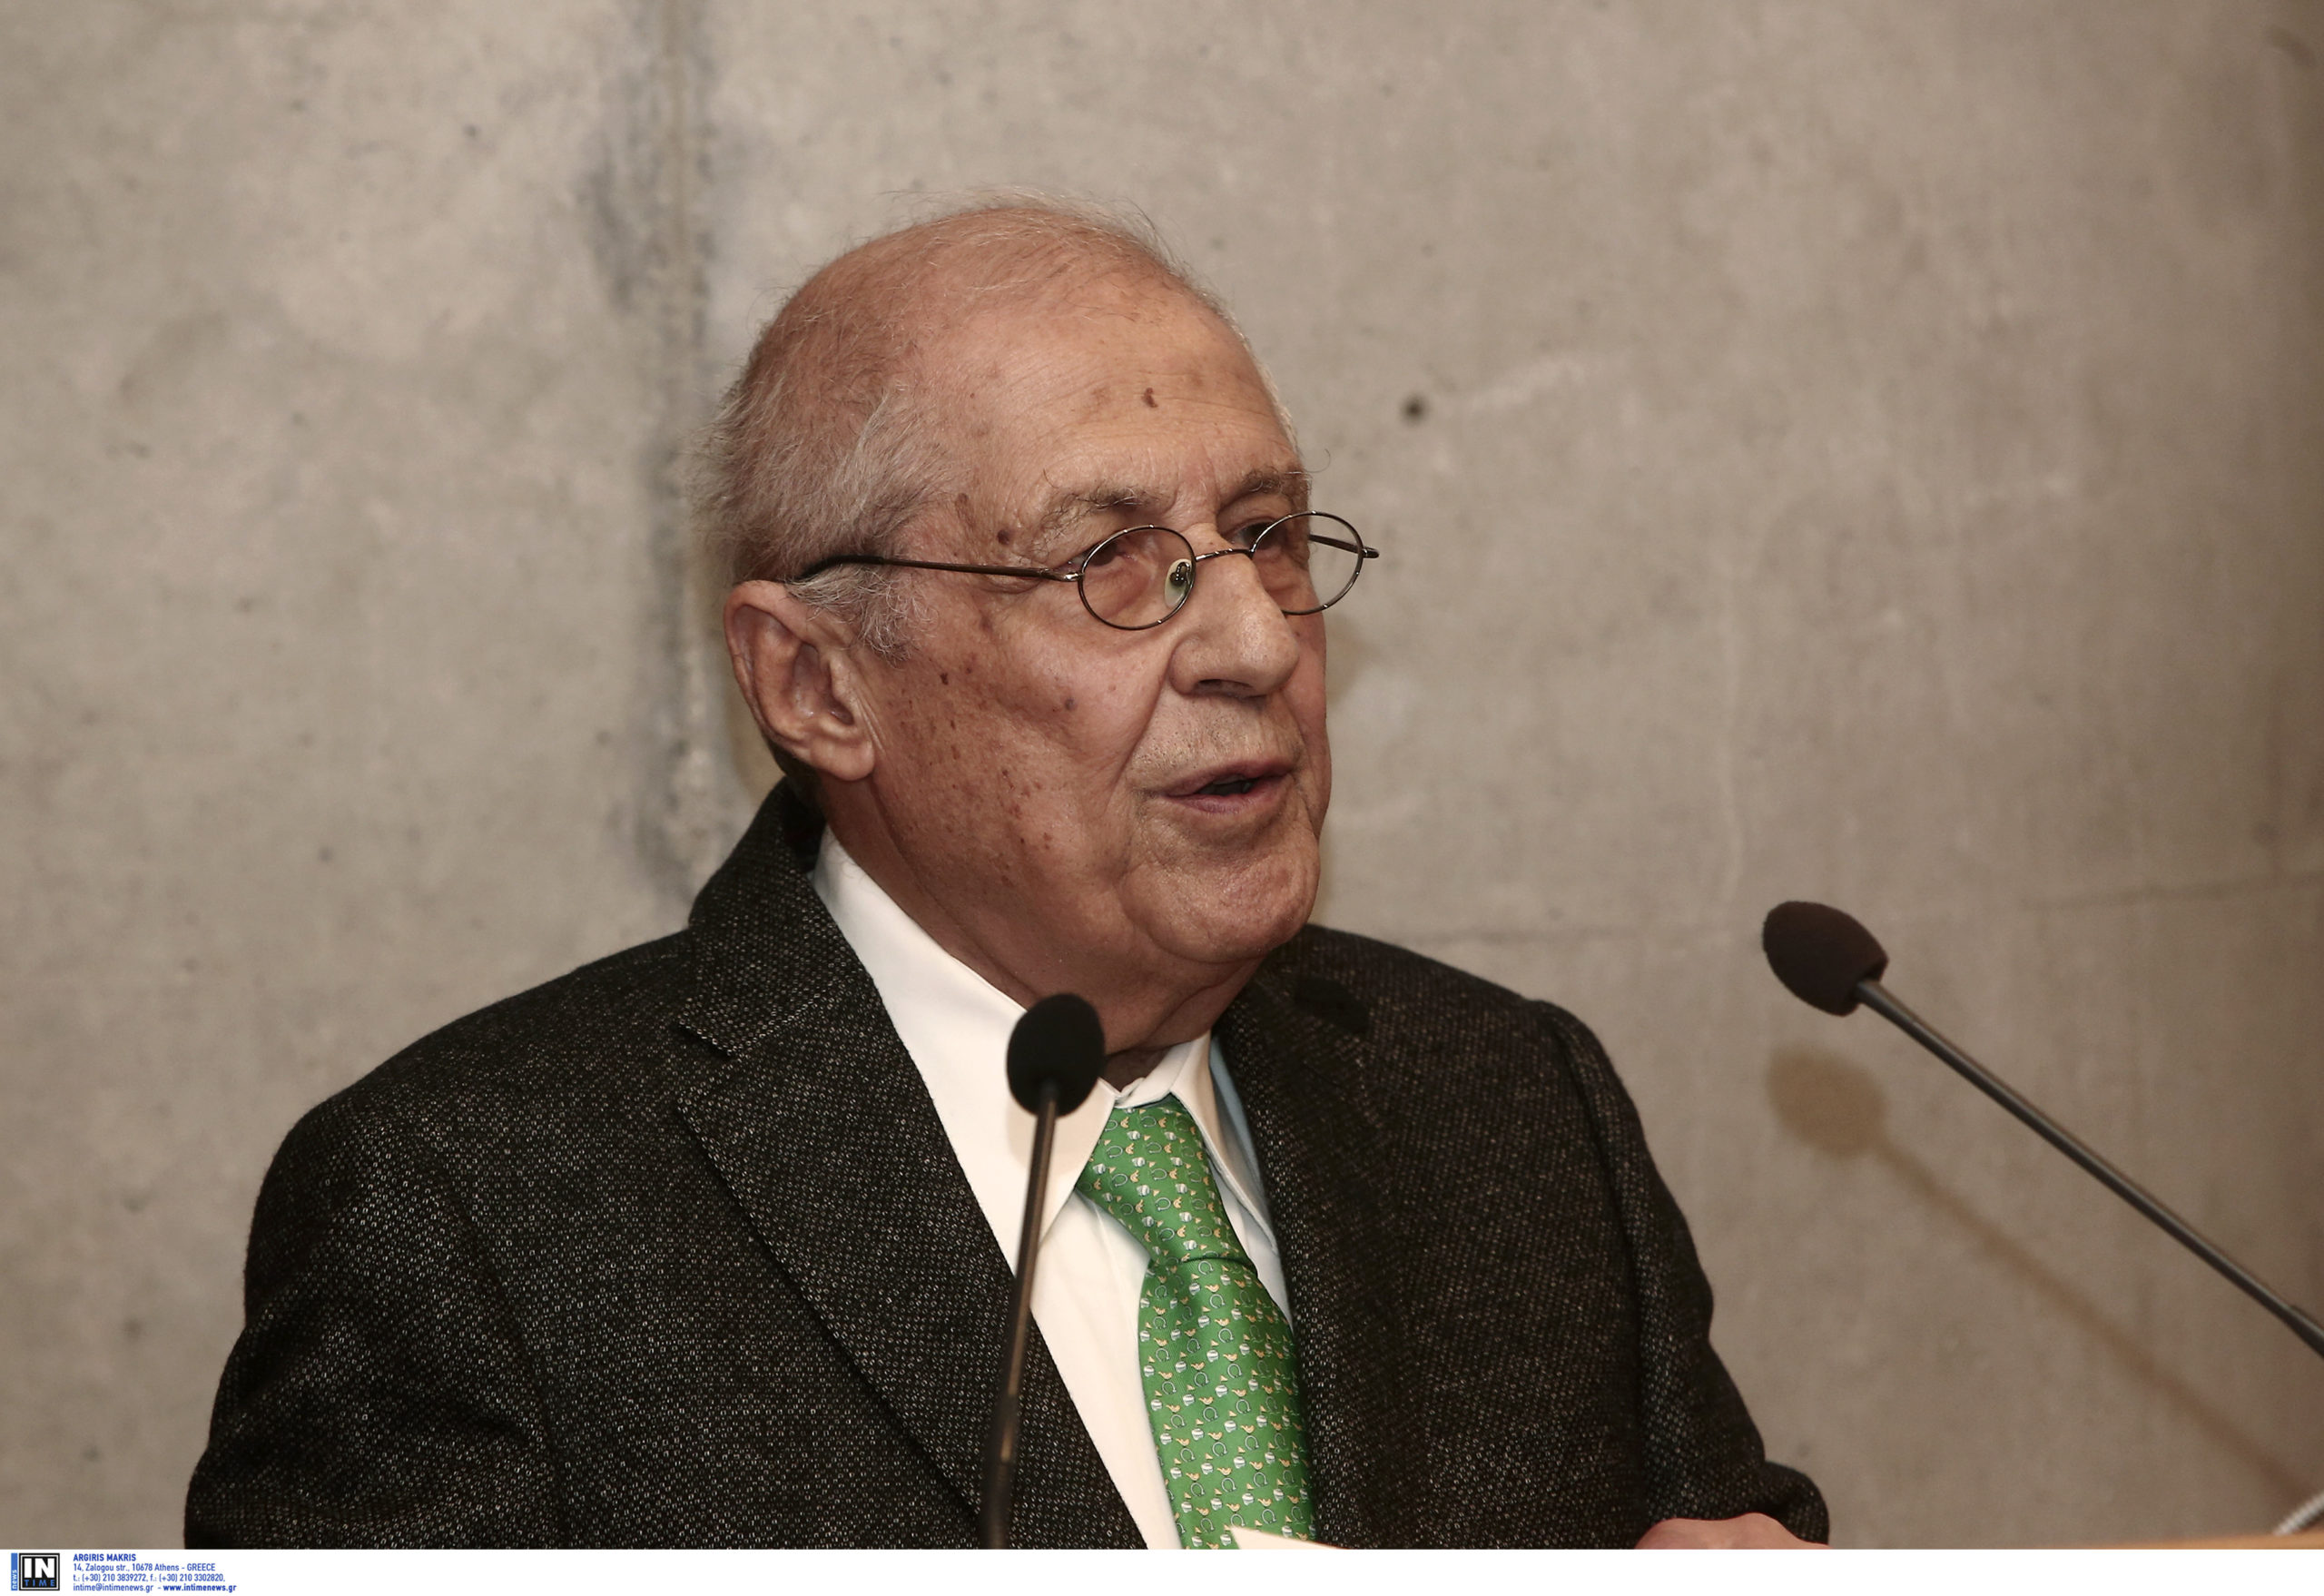 Πέθανε ο διευθυντής του Μουσείου της Ακρόπολης Δημήτρης Παντερμαλής